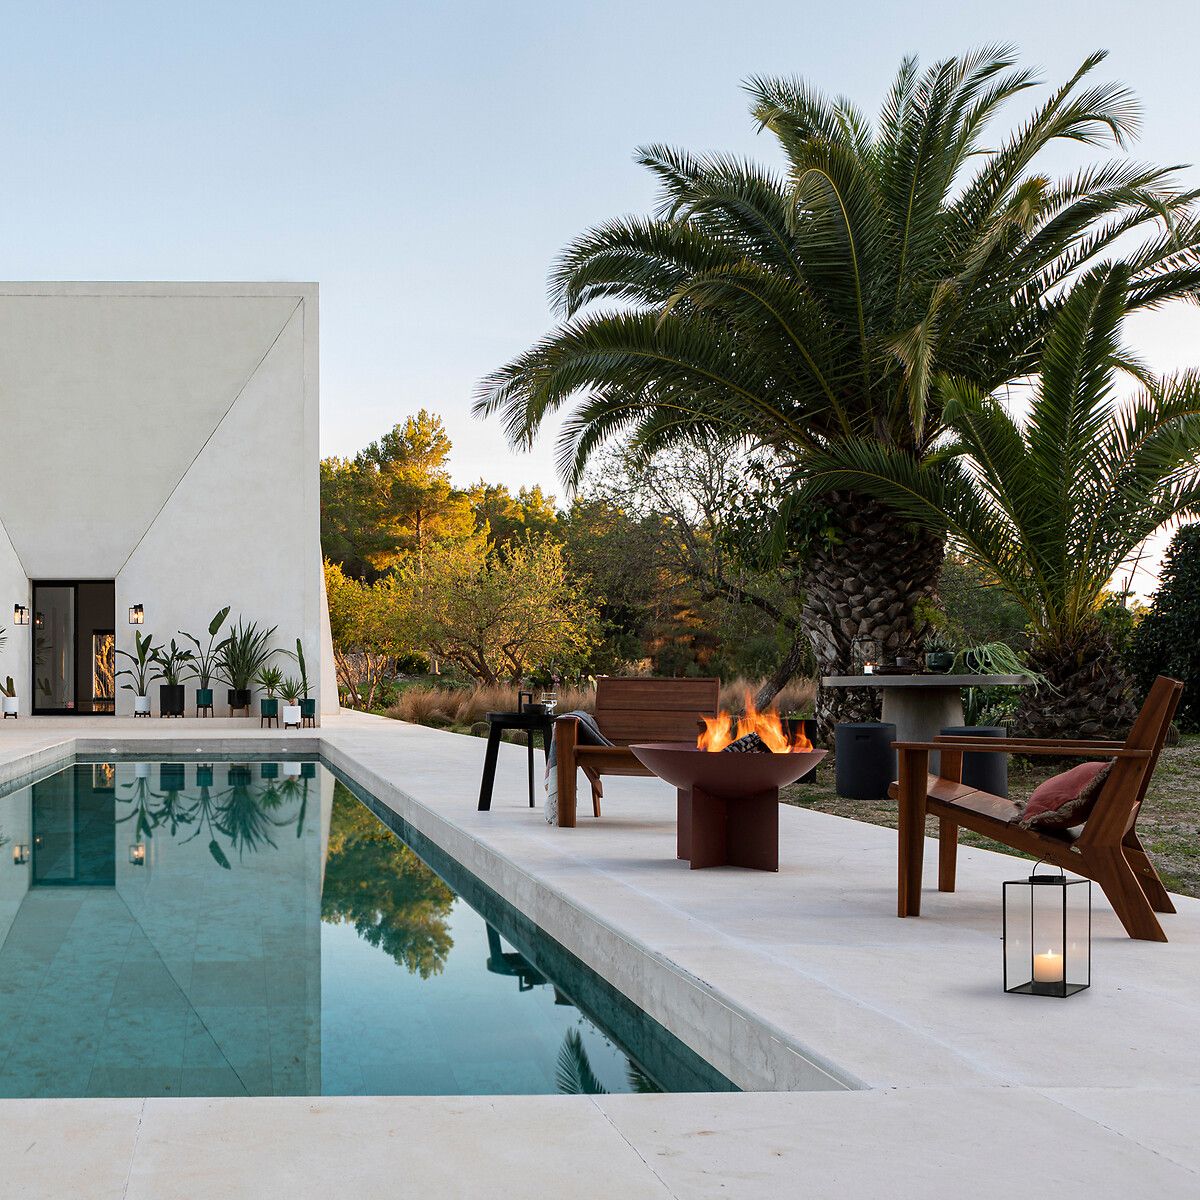 aménagement bord de piscine villa béton - blog déco design architecture - clem around the corner